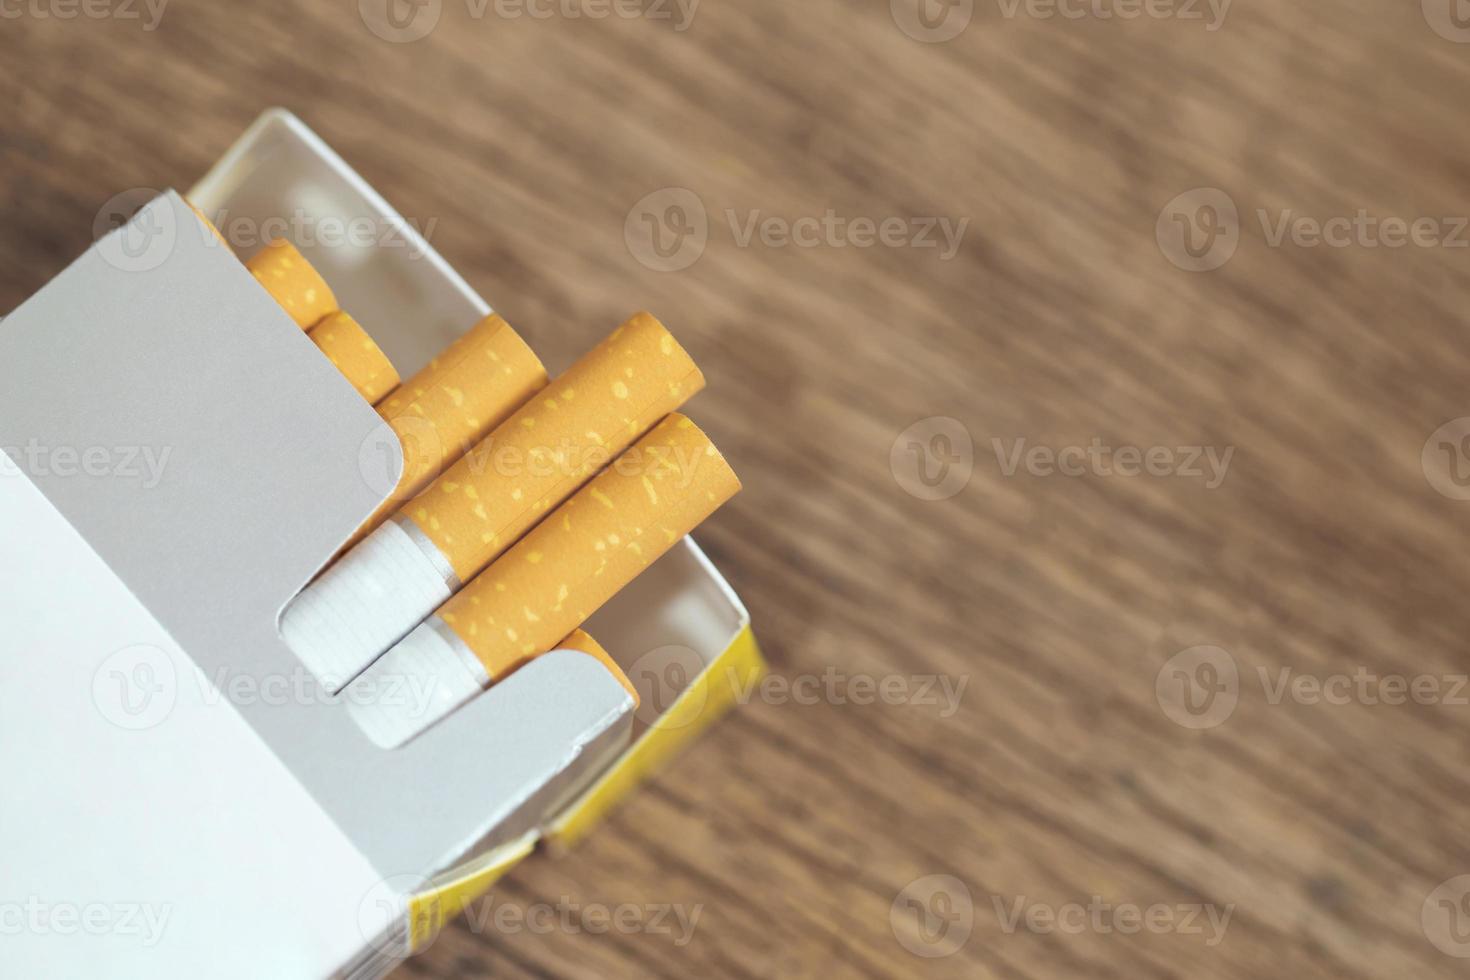 Ziehen Sie es von der Zigarettenpackung ab Rauchen vorbereiten. Verpackungslinie auf den Holztisch gelegt. Foto filtert natürliches Licht.